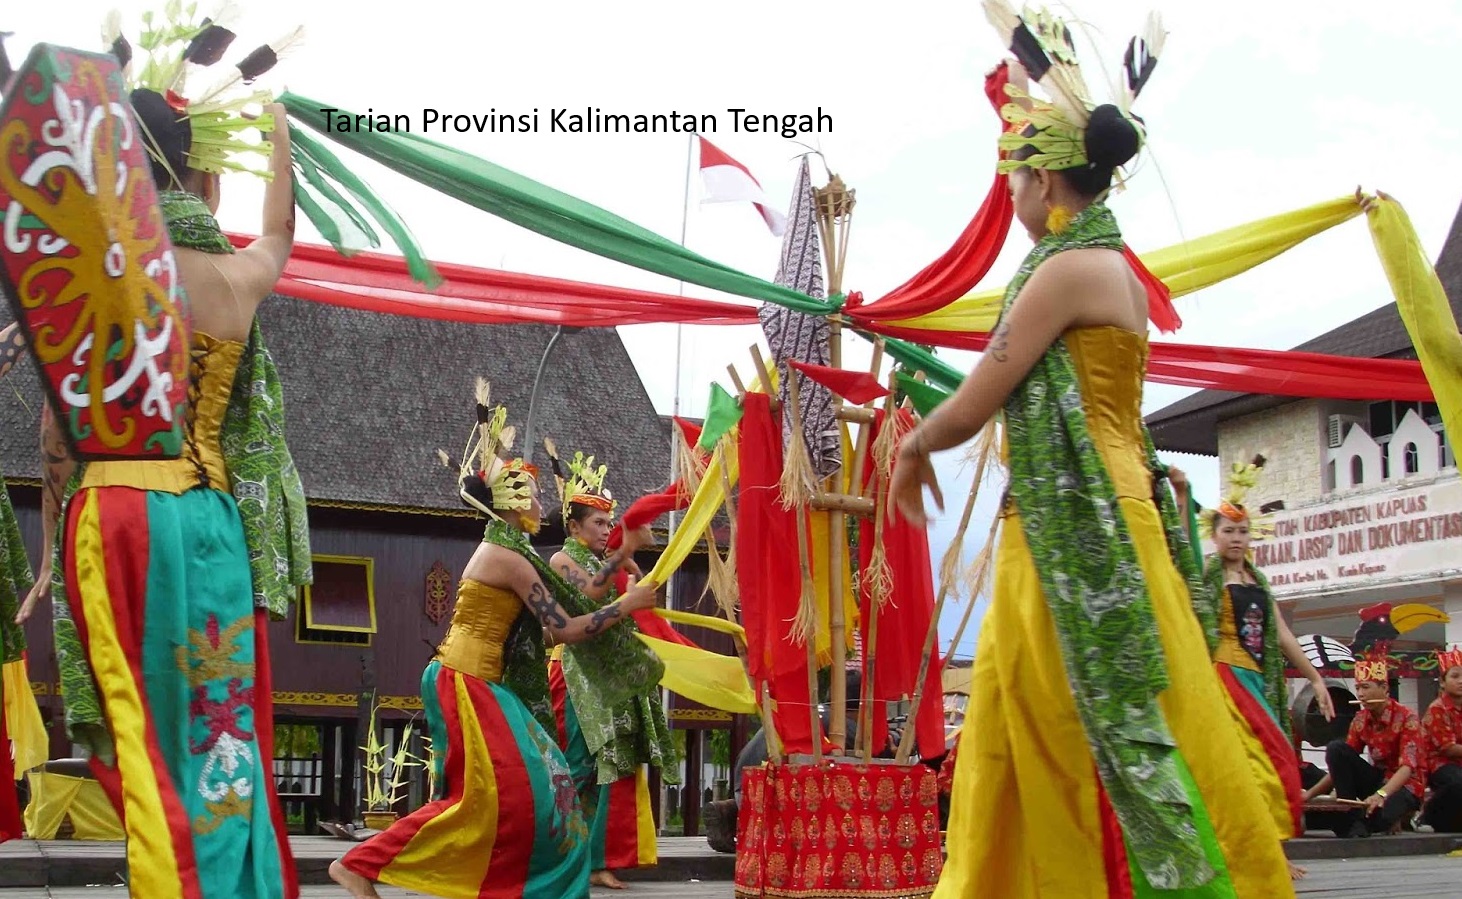 Rencana Pendirian Ibukota Negara (IKN) di Pulau Kalimantan dan Pemekaran Provinsi Kalimantan Tengah